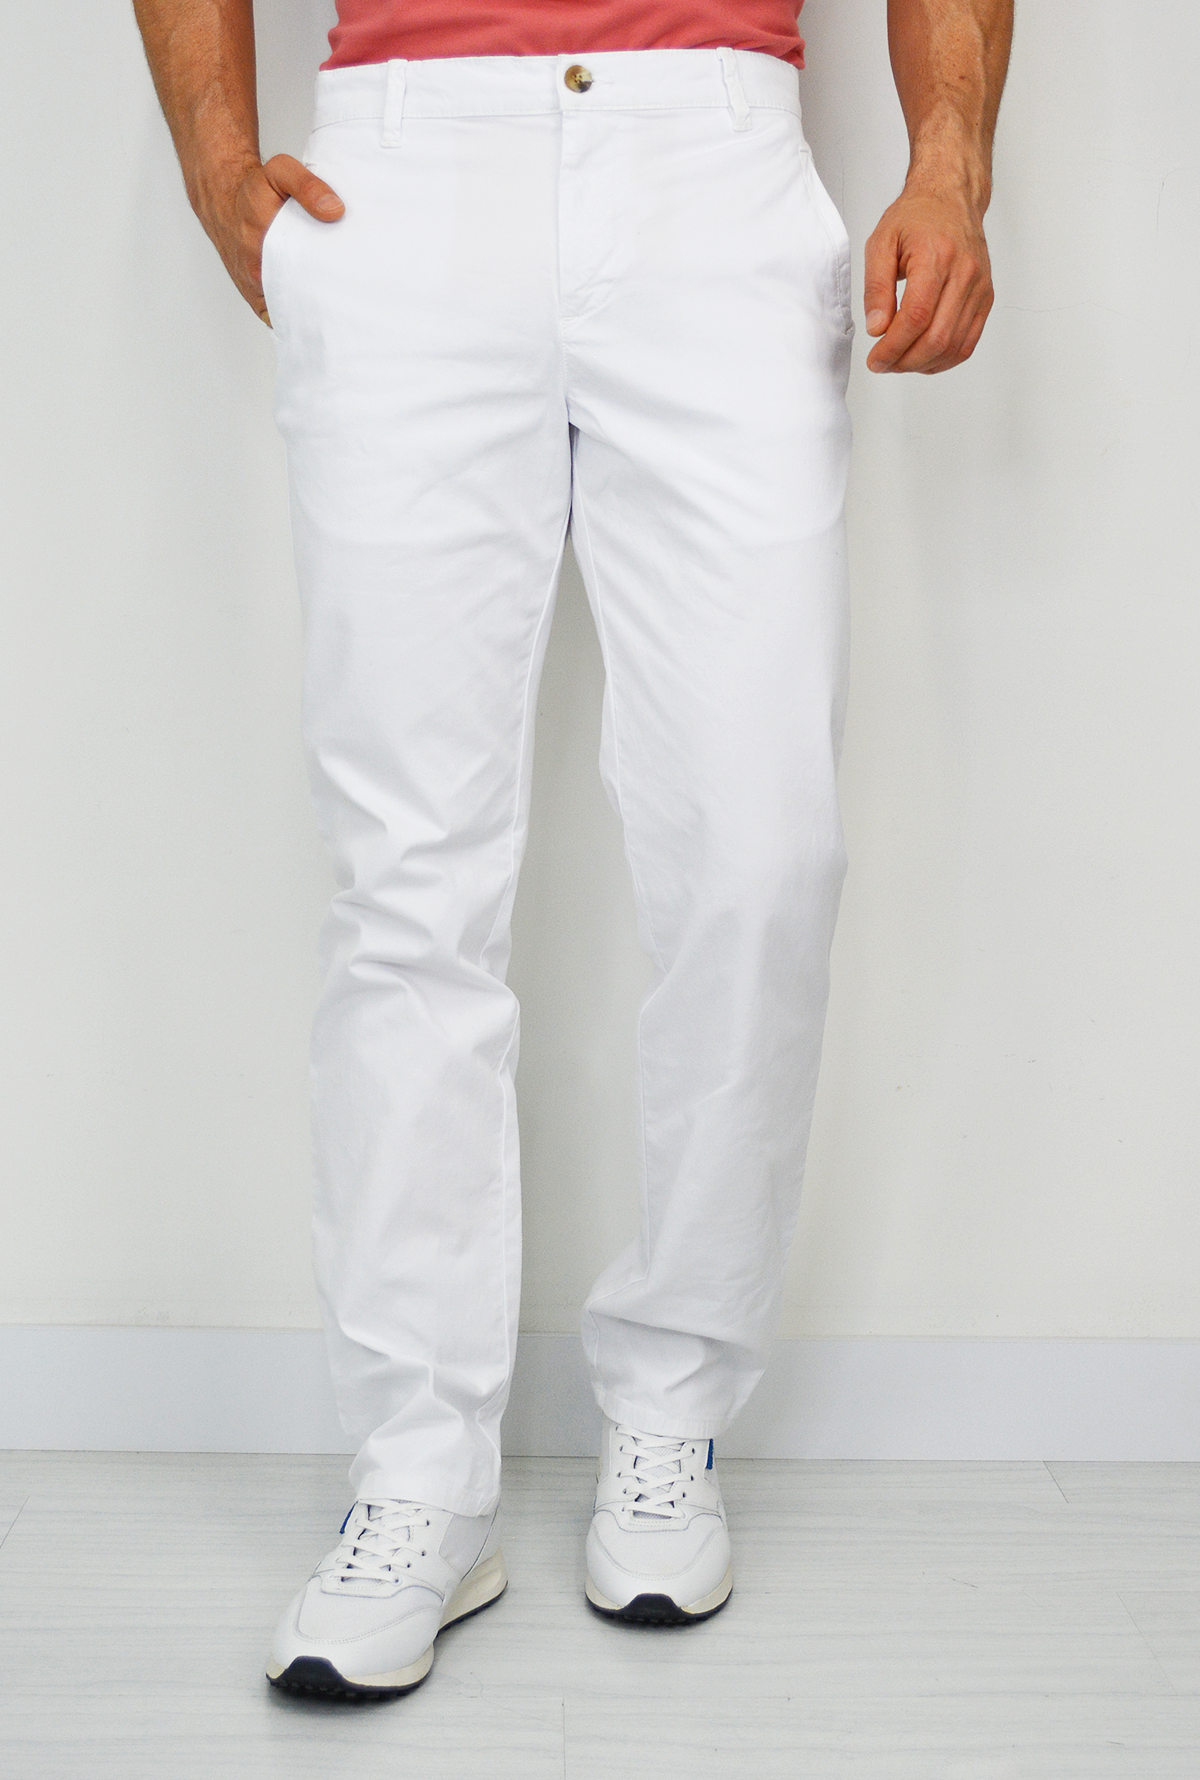 Pantalon Blanco Para Hombre